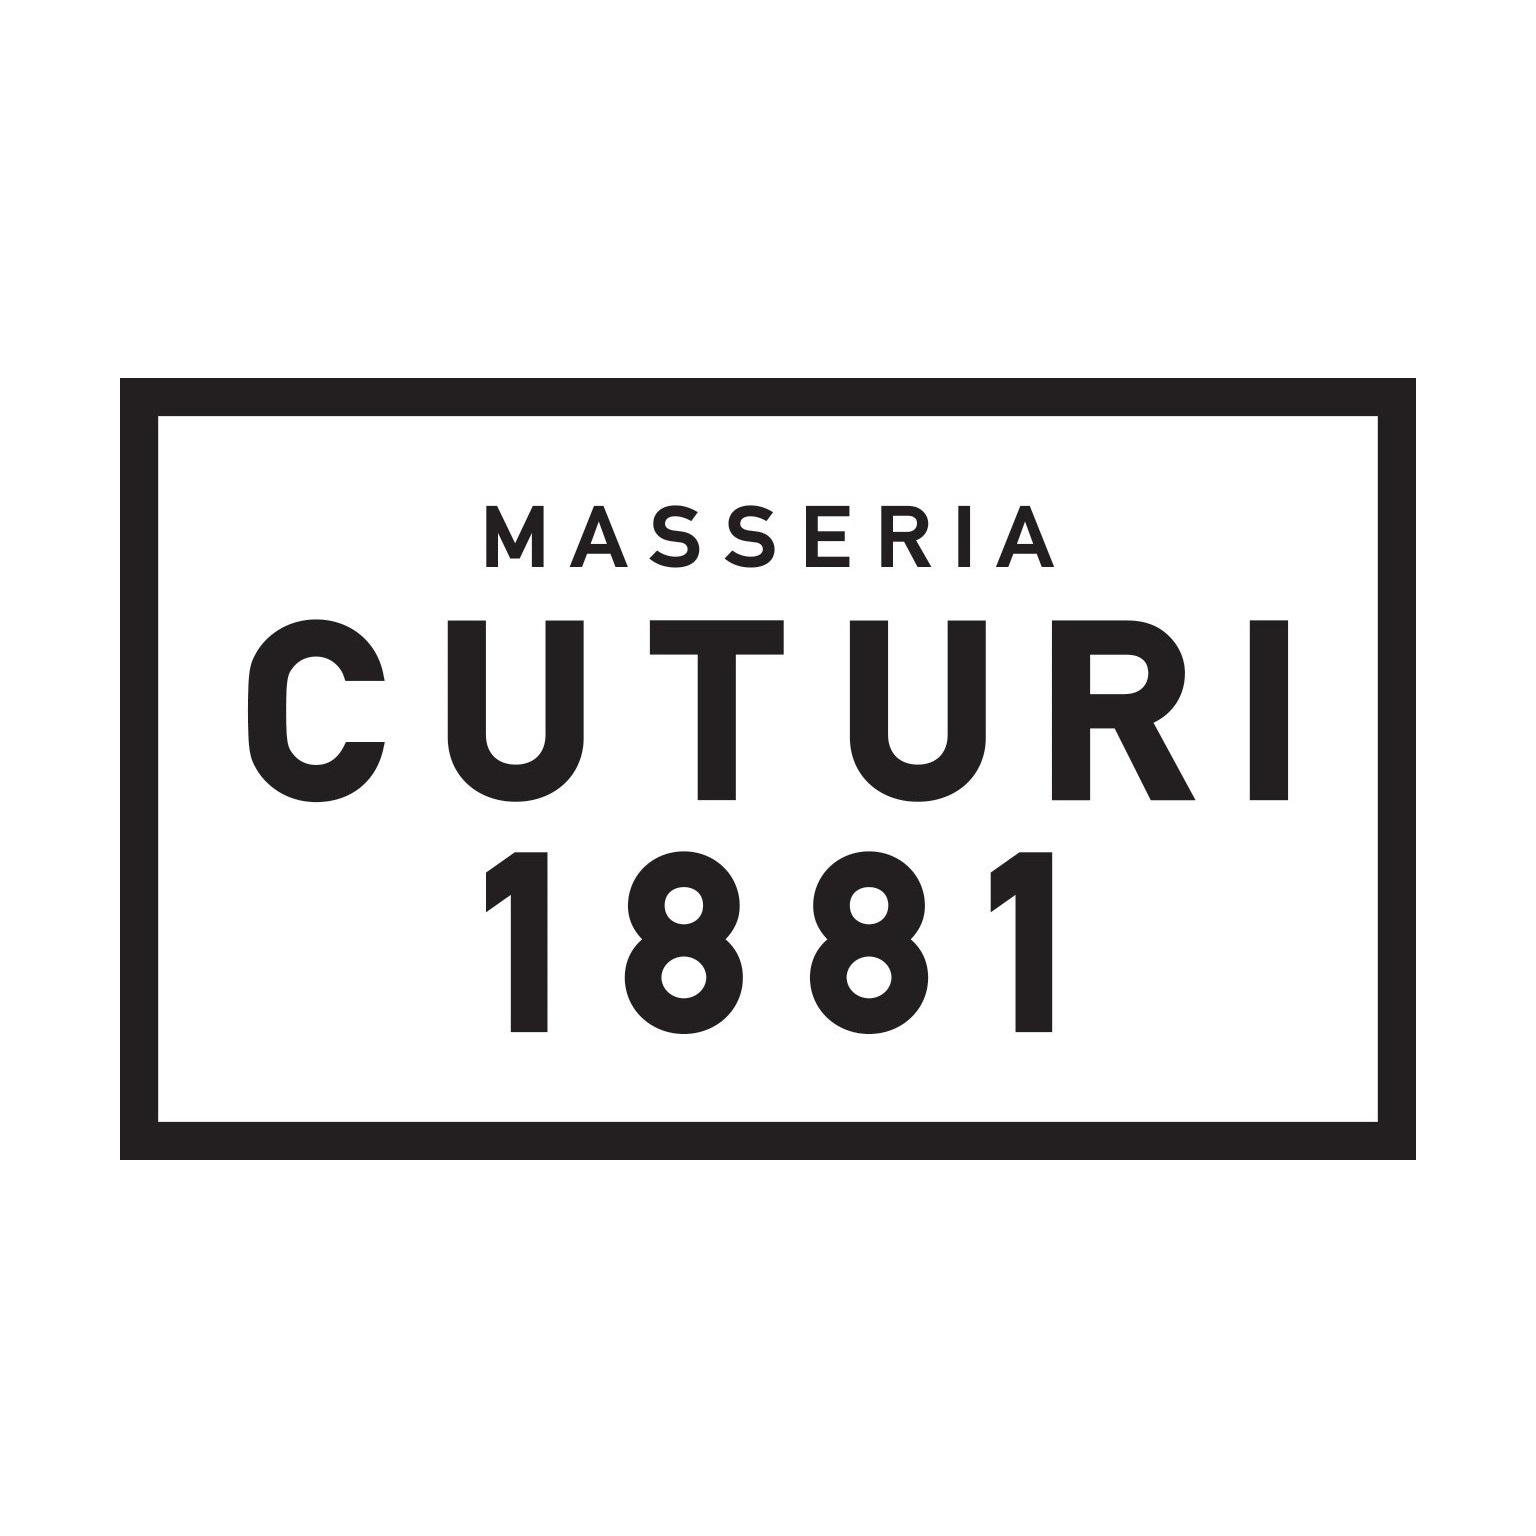 Masseria Cuturi logo